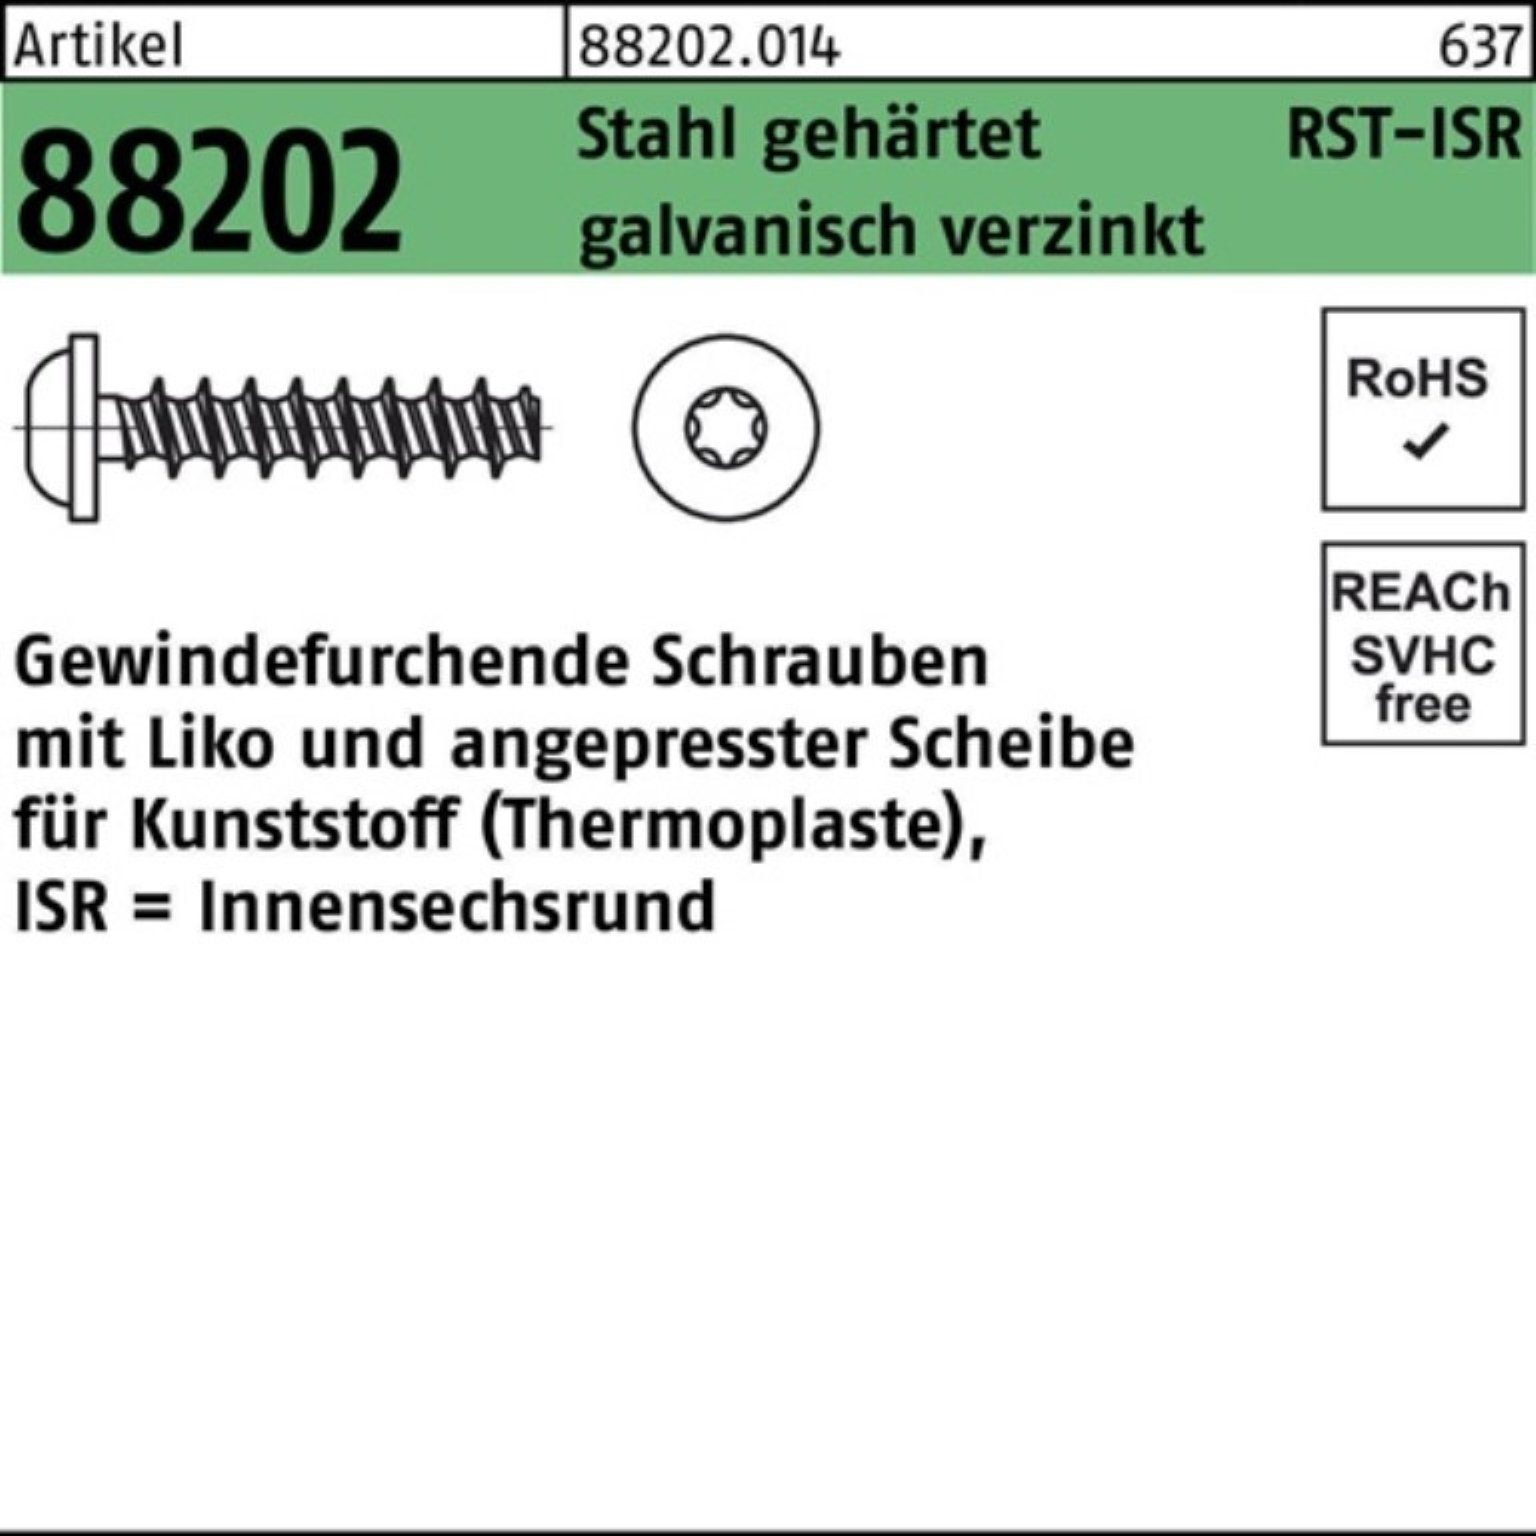 Reyher Gewindeschraube Gewindefurchendeschraube R g 88202 Pack 2,5x8-T8 Liko Stahl ISR 1000er